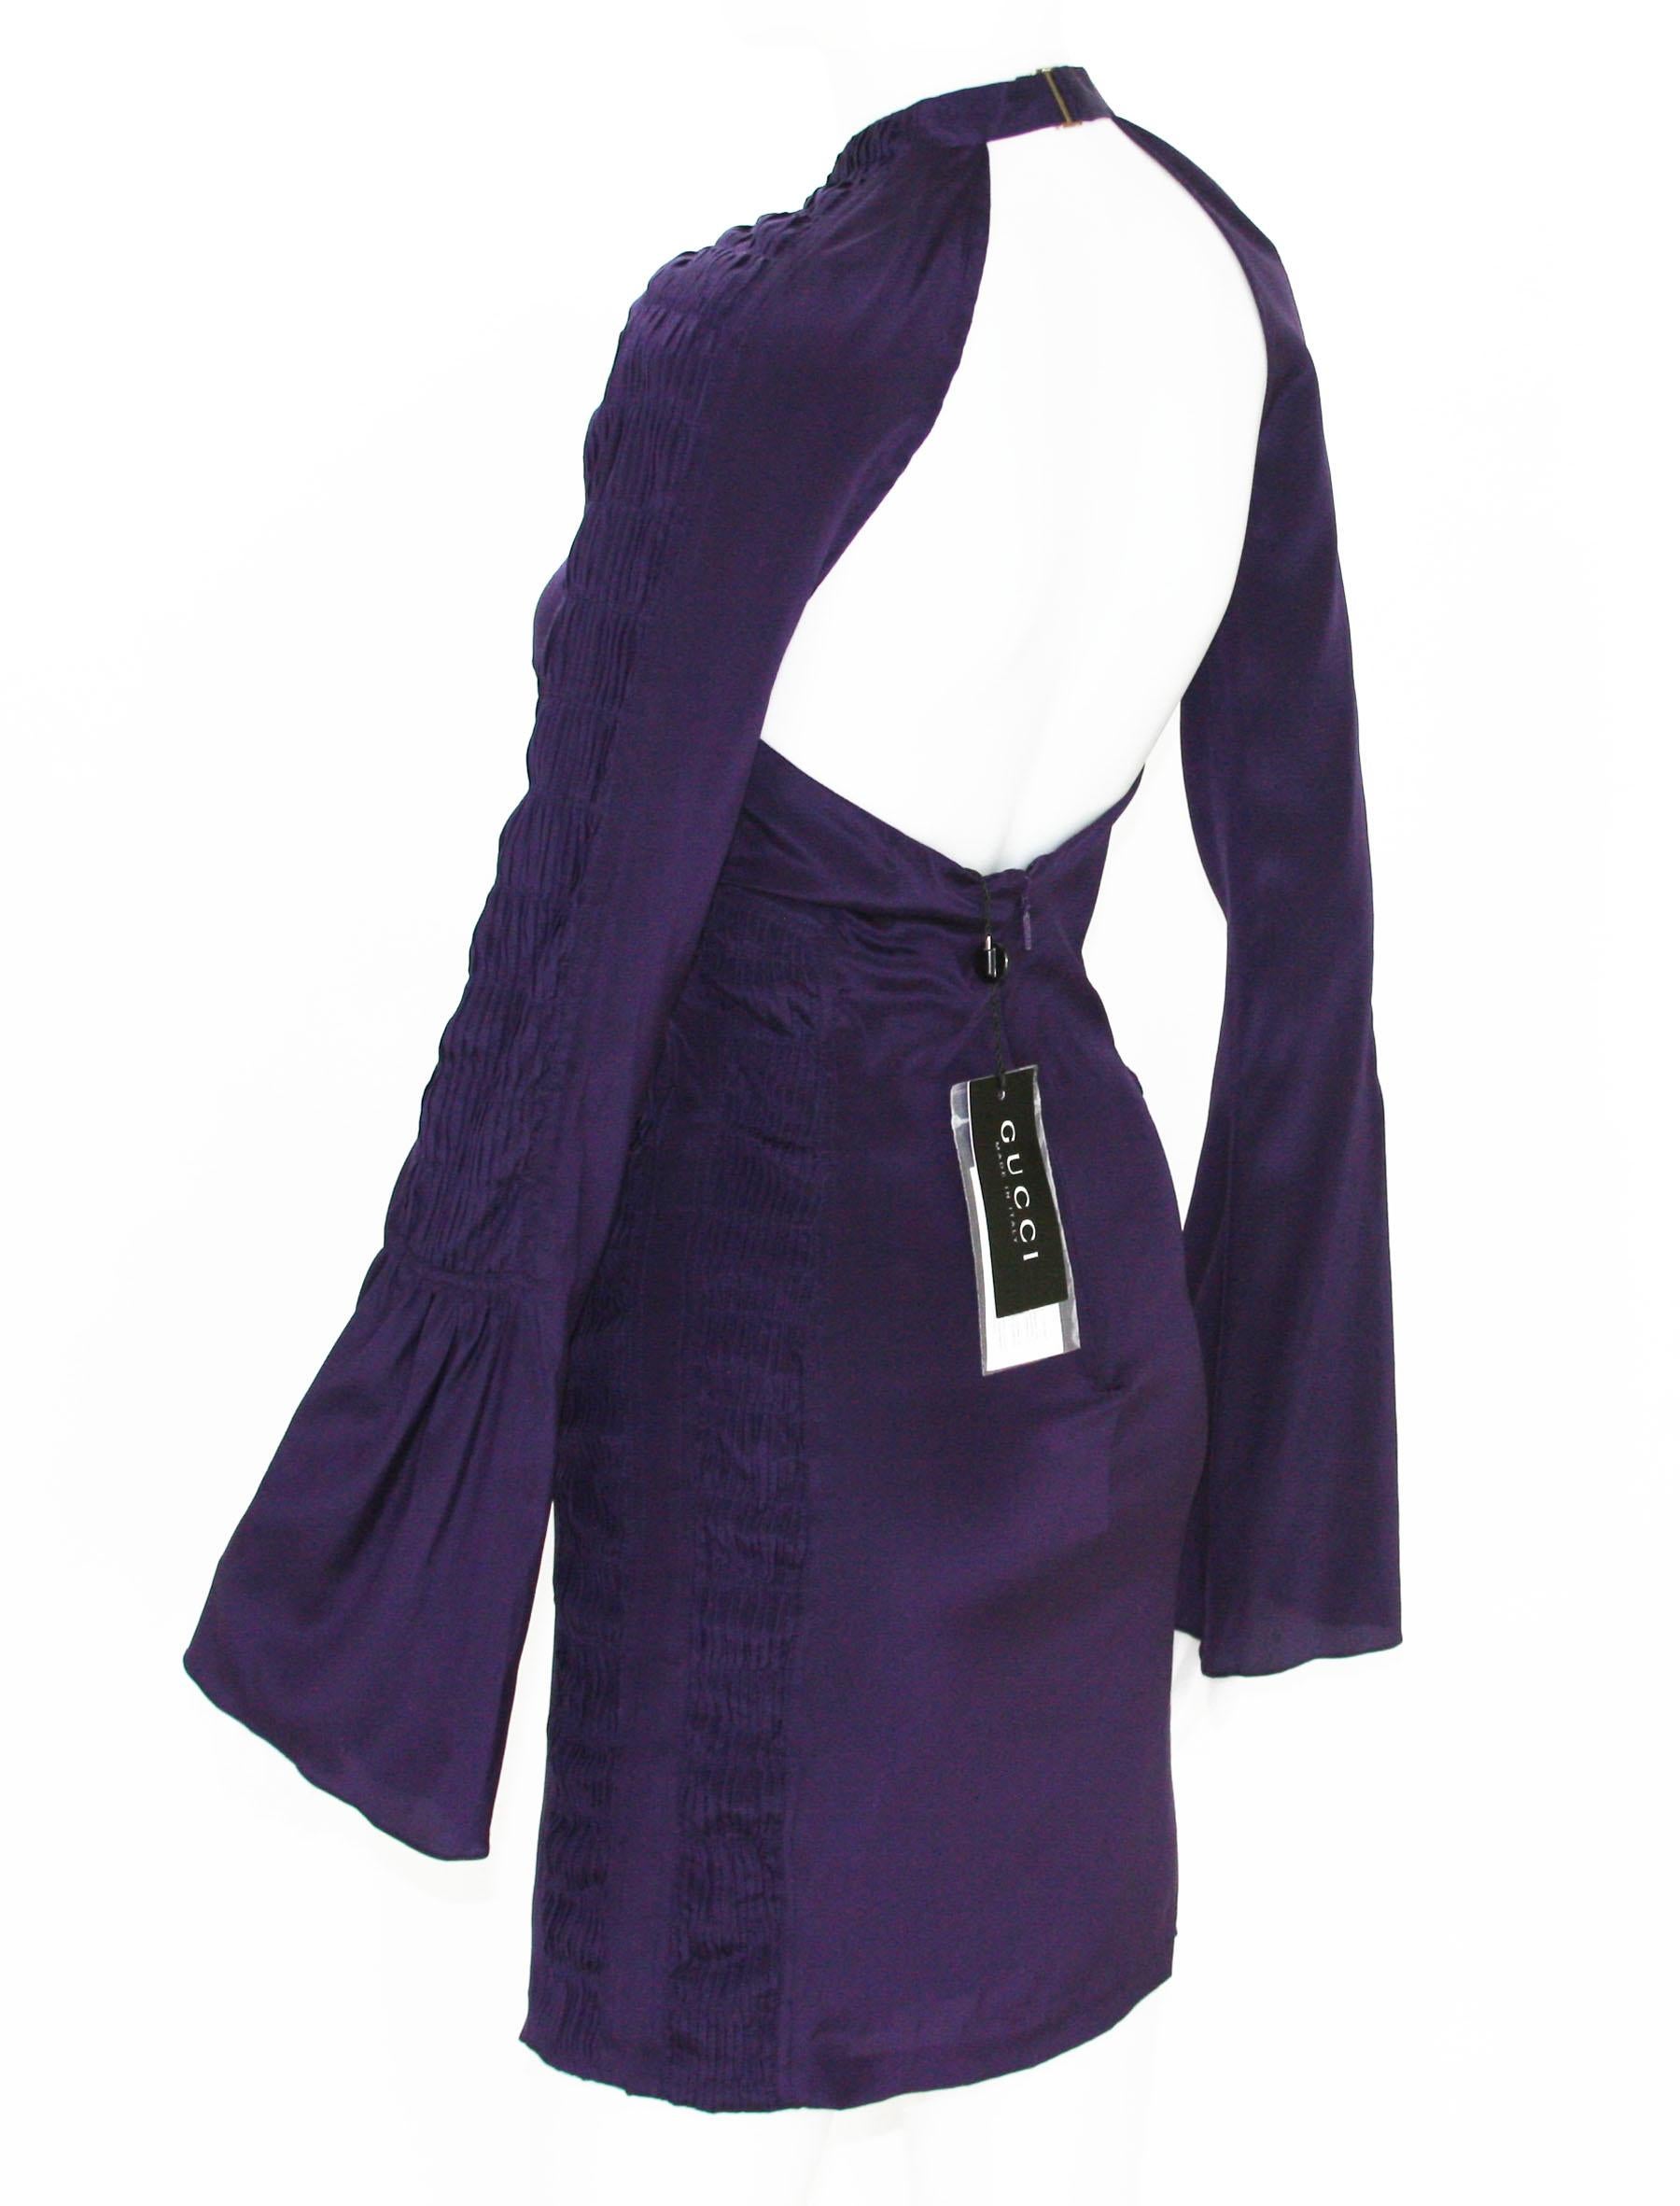 Noir Tom Ford for Gucci, robe dos nu plongeant en soie violet profond, défilé P/É 2004, taille 38 et 44, neuve en vente